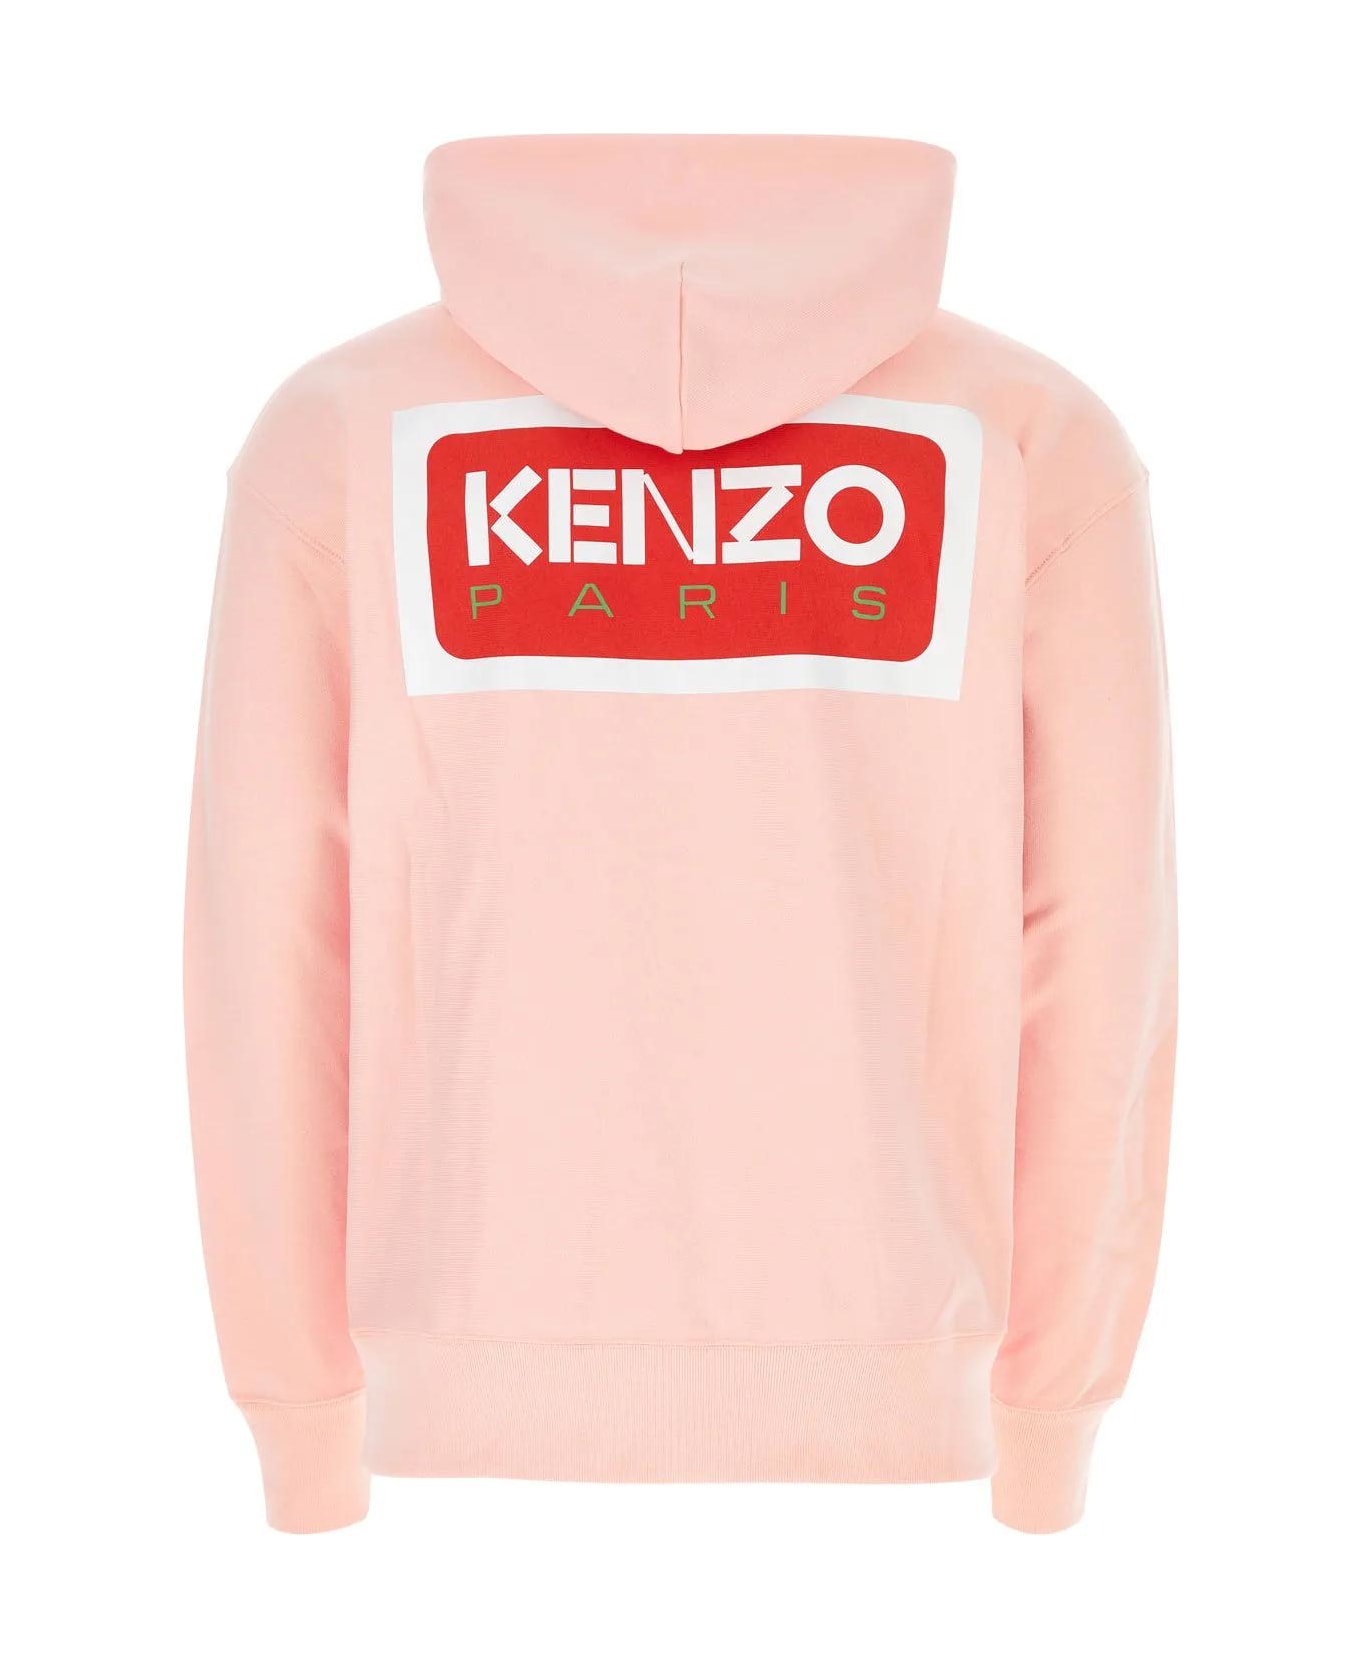 Kenzo Oversize Sweatshirt - FADED PINK フリース